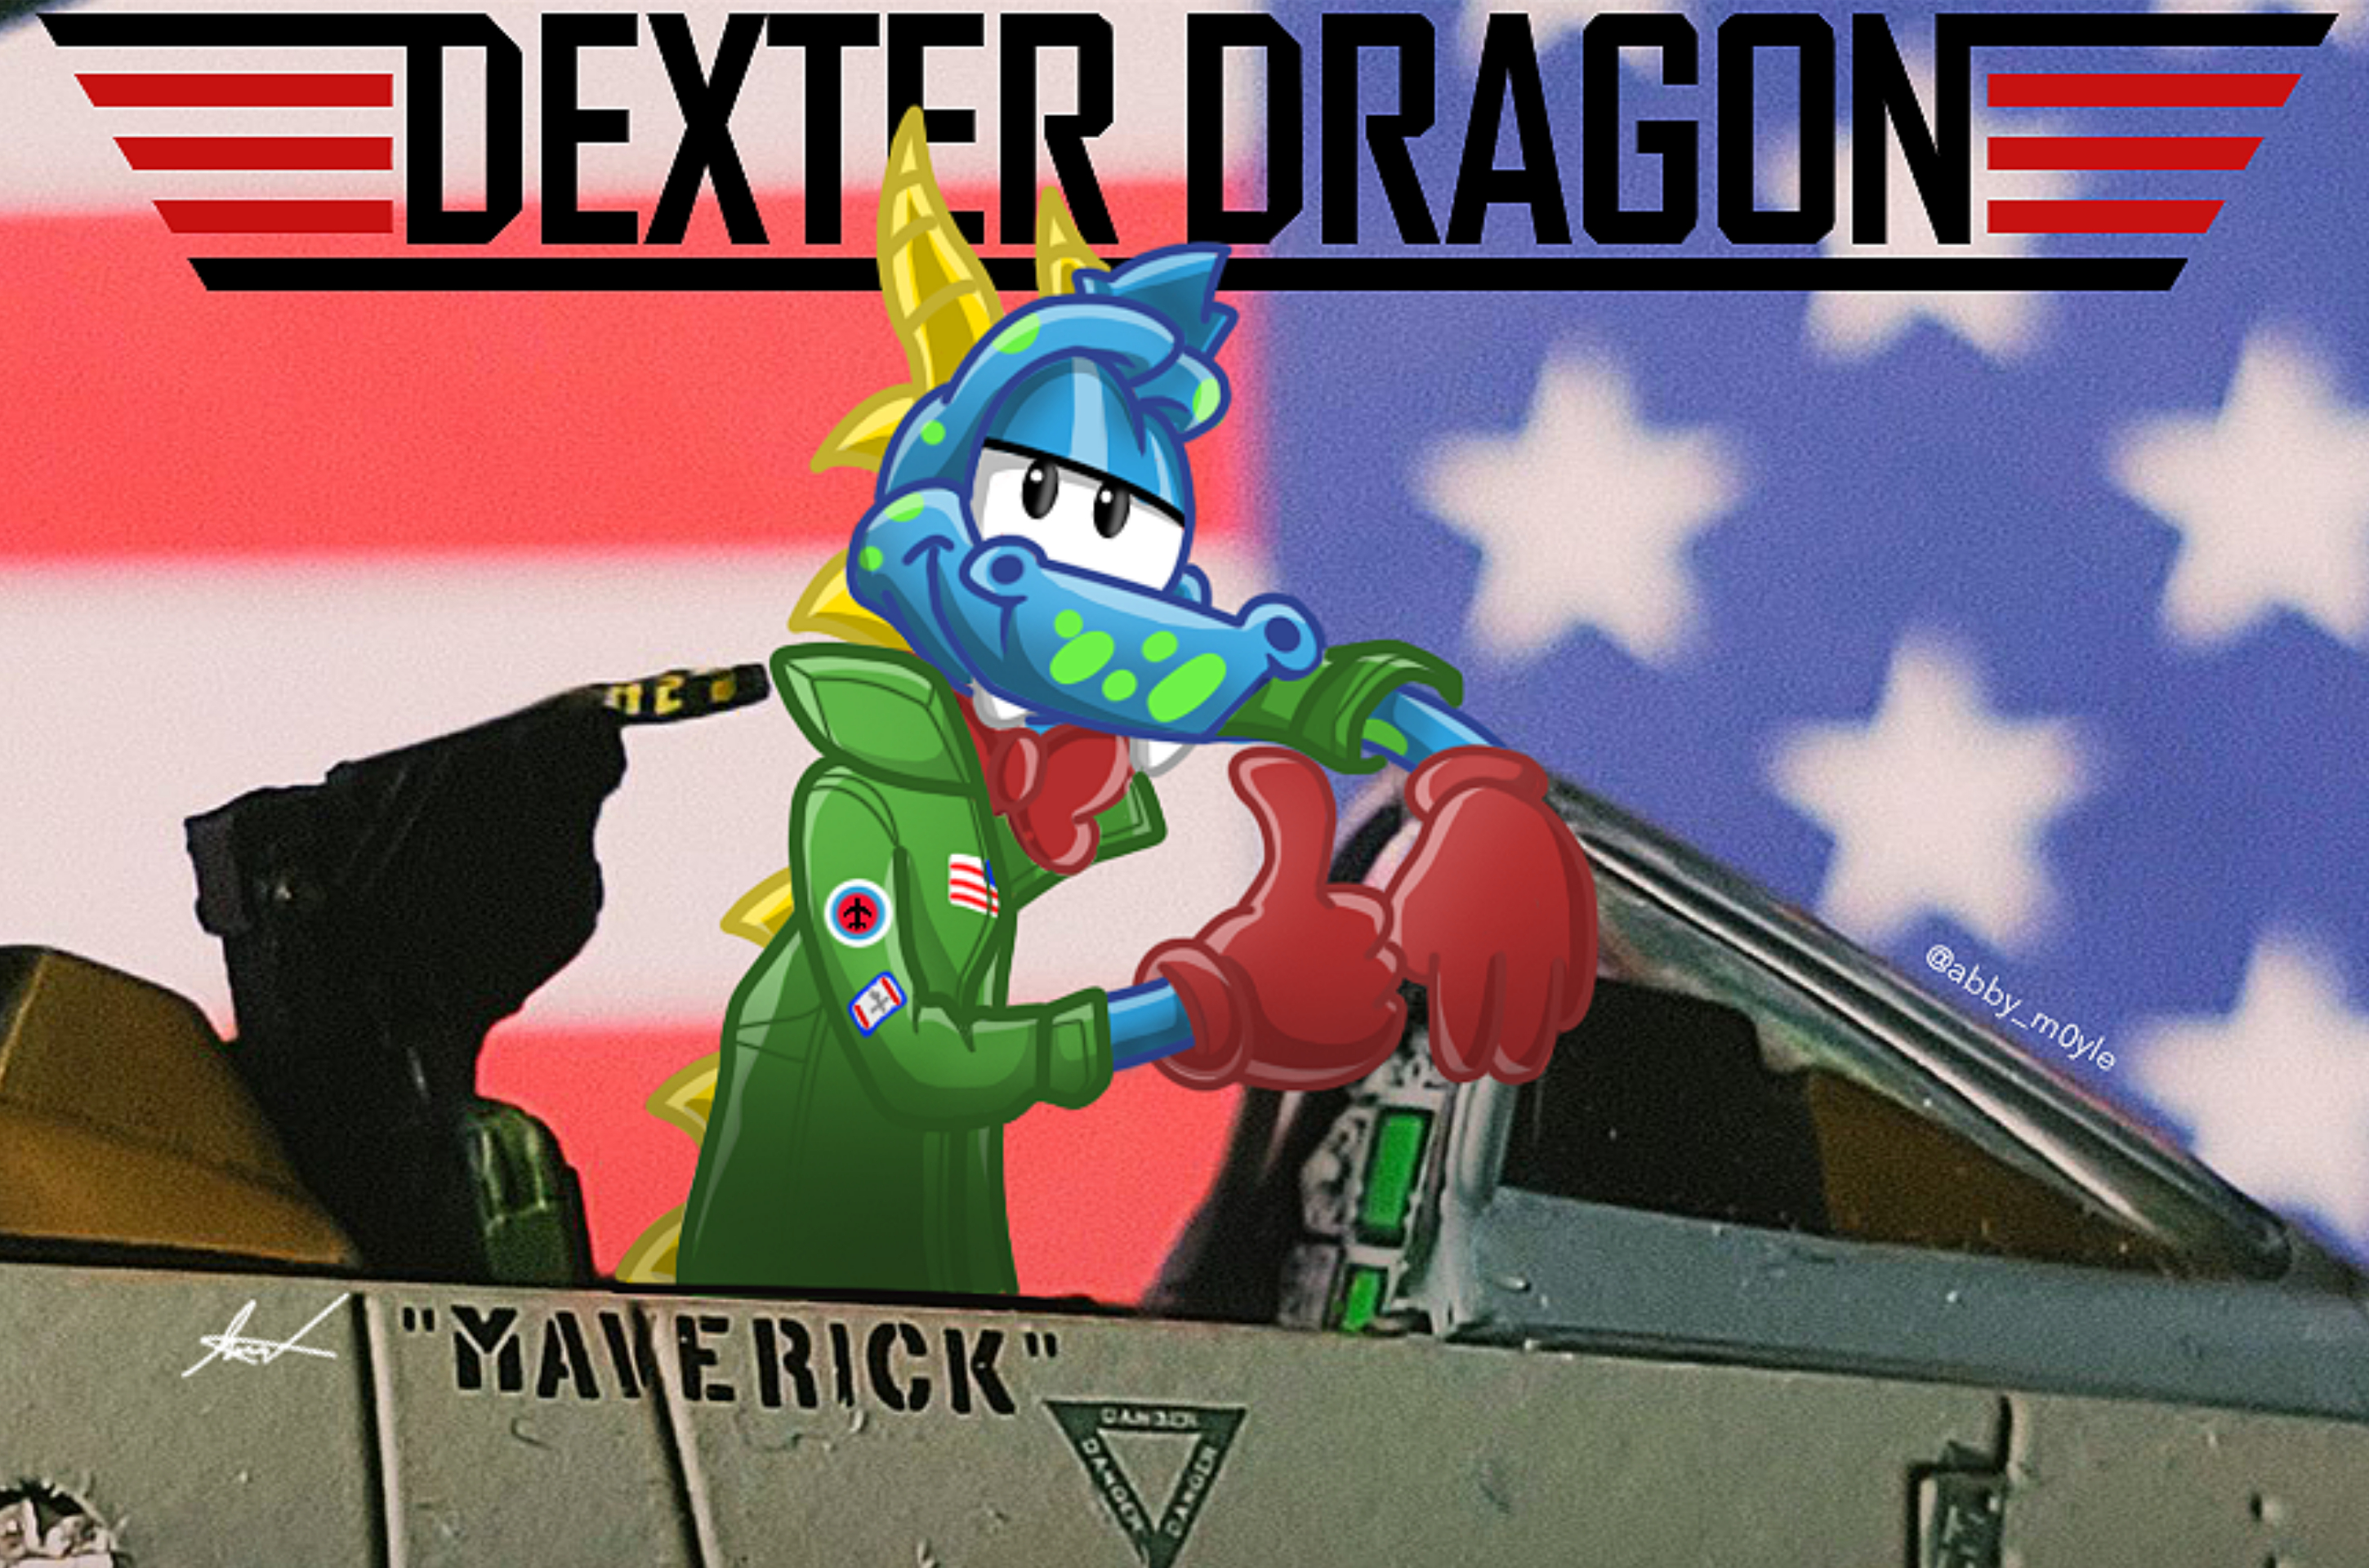 Top Gun / Dexter Dragon